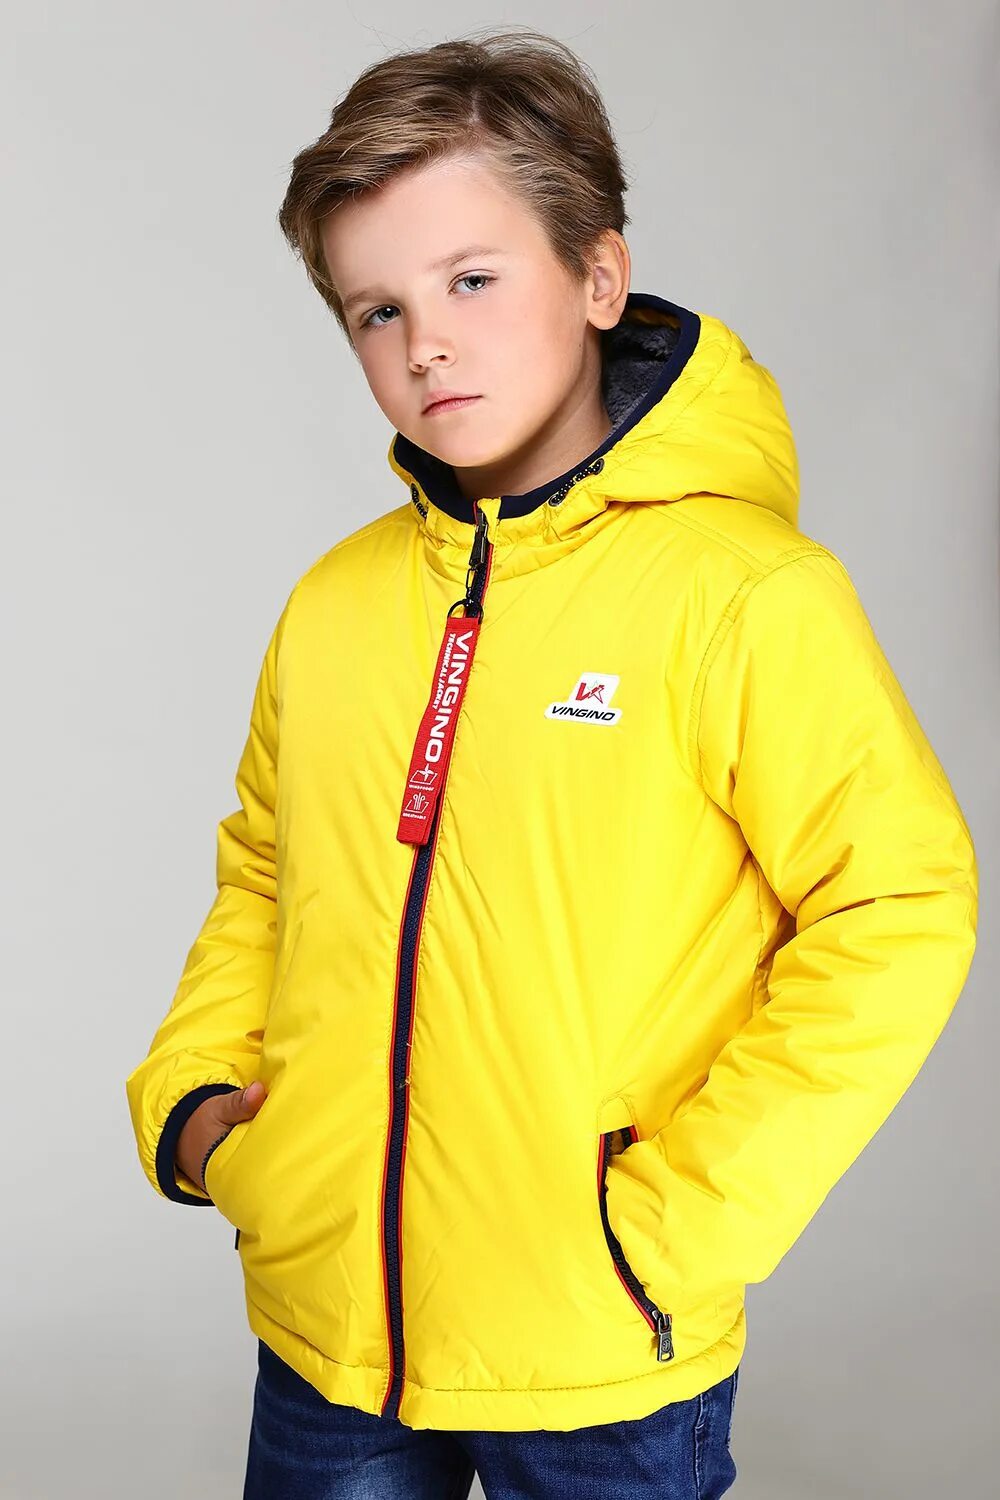 Желтая куртка для мальчика. Желтая детская куртка. Желтая куртка для мальчика подростка. Желтая короткая куртка для мальчика. Куртки с сине желтым для мальчиков.